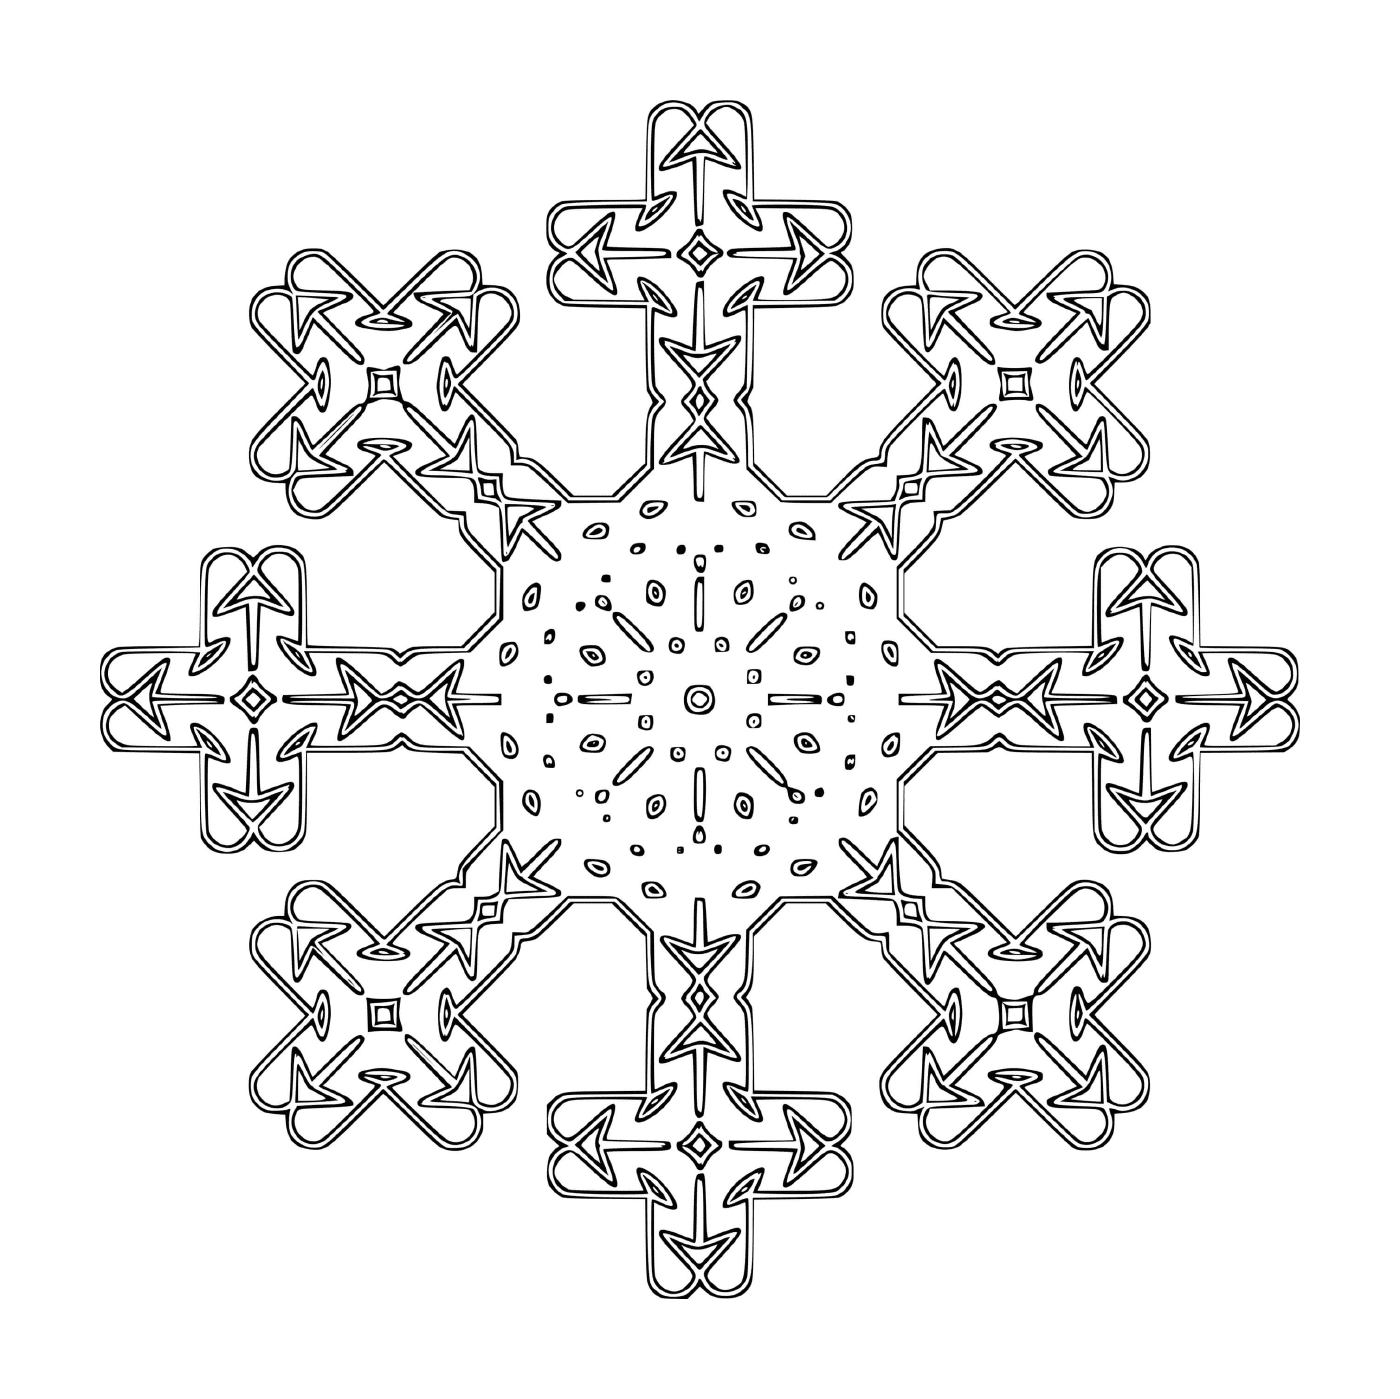  Um floco de neve original em forma de cruz 